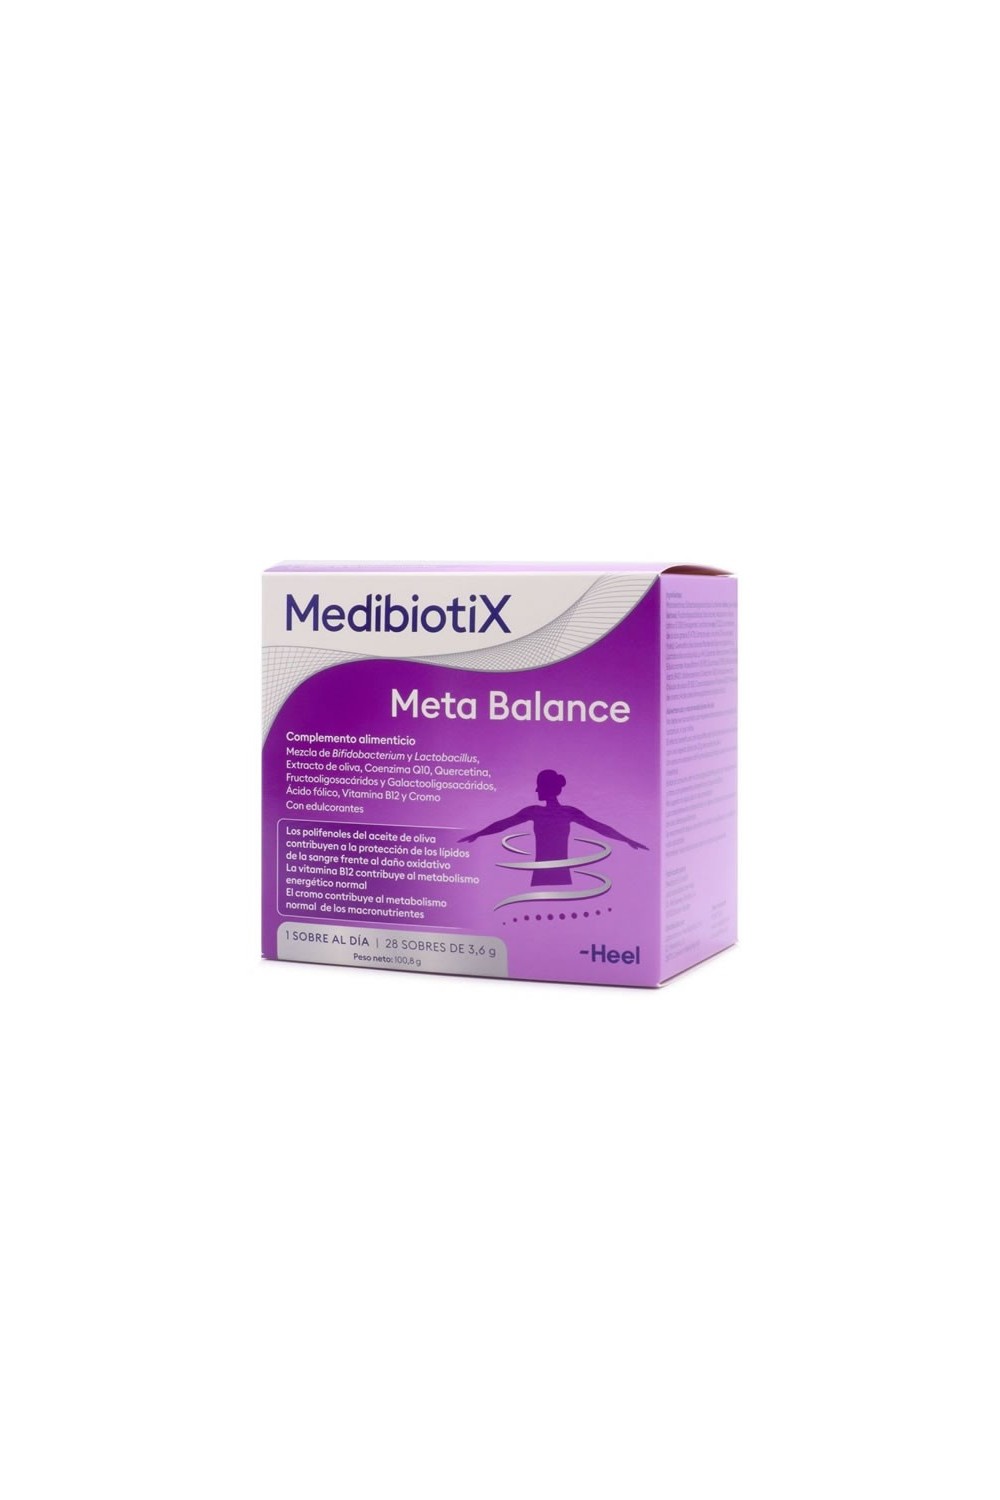 Heel MEdibiotix Meta Balance 28 Envelopes